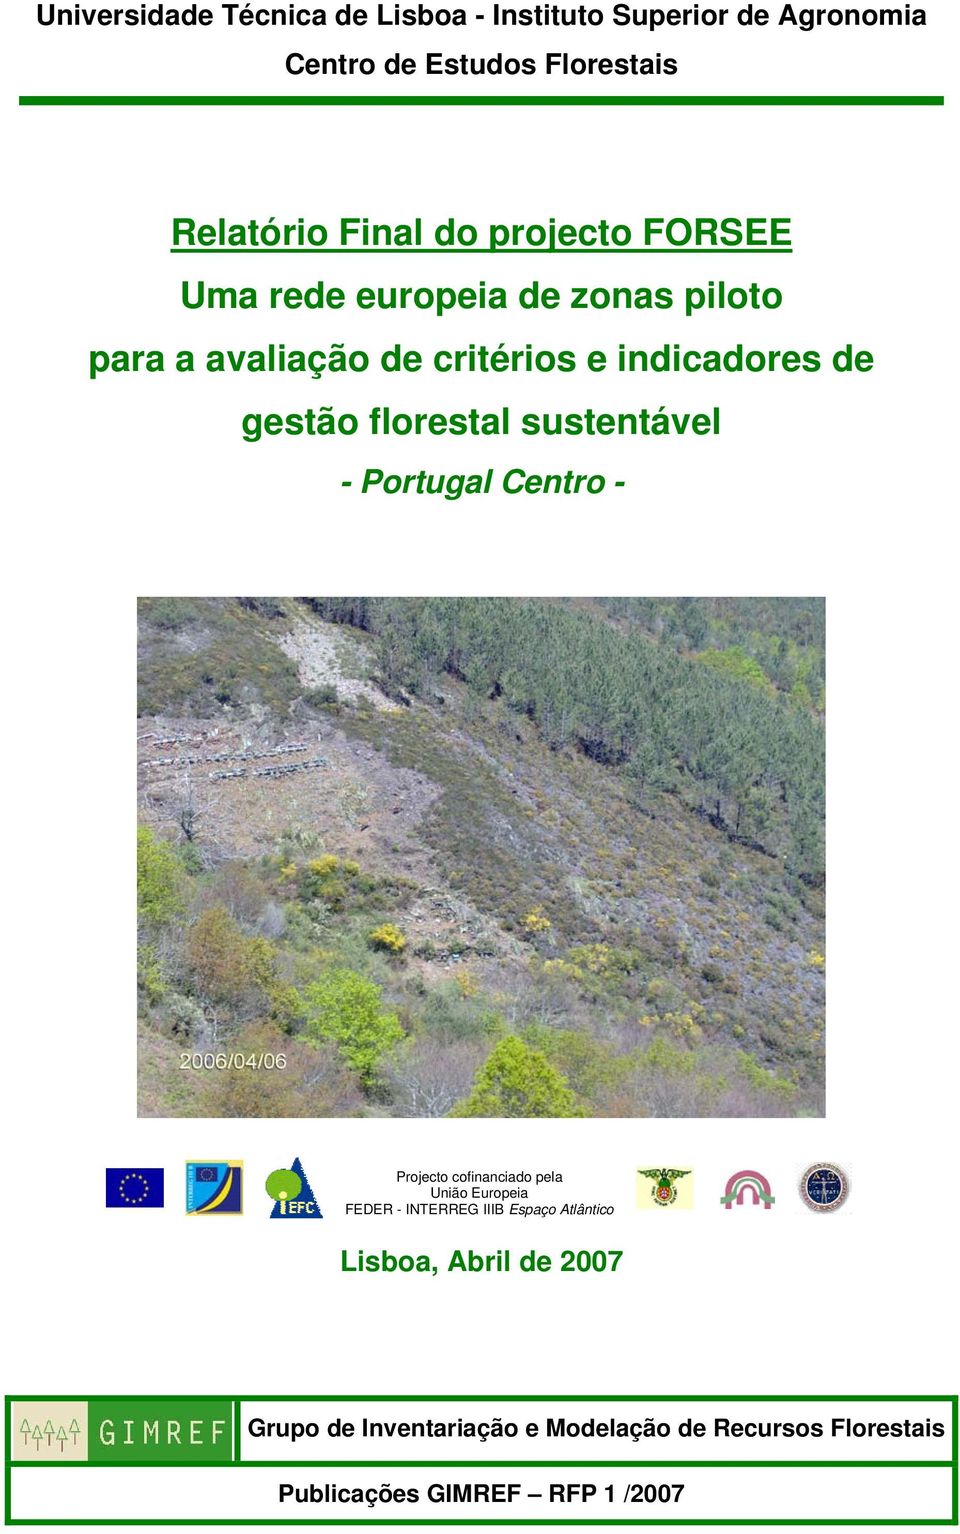 florestal sustentável - Portugal Centro - Projecto cofinanciado pela União Europeia FEDER - INTERREG IIIB Espaço